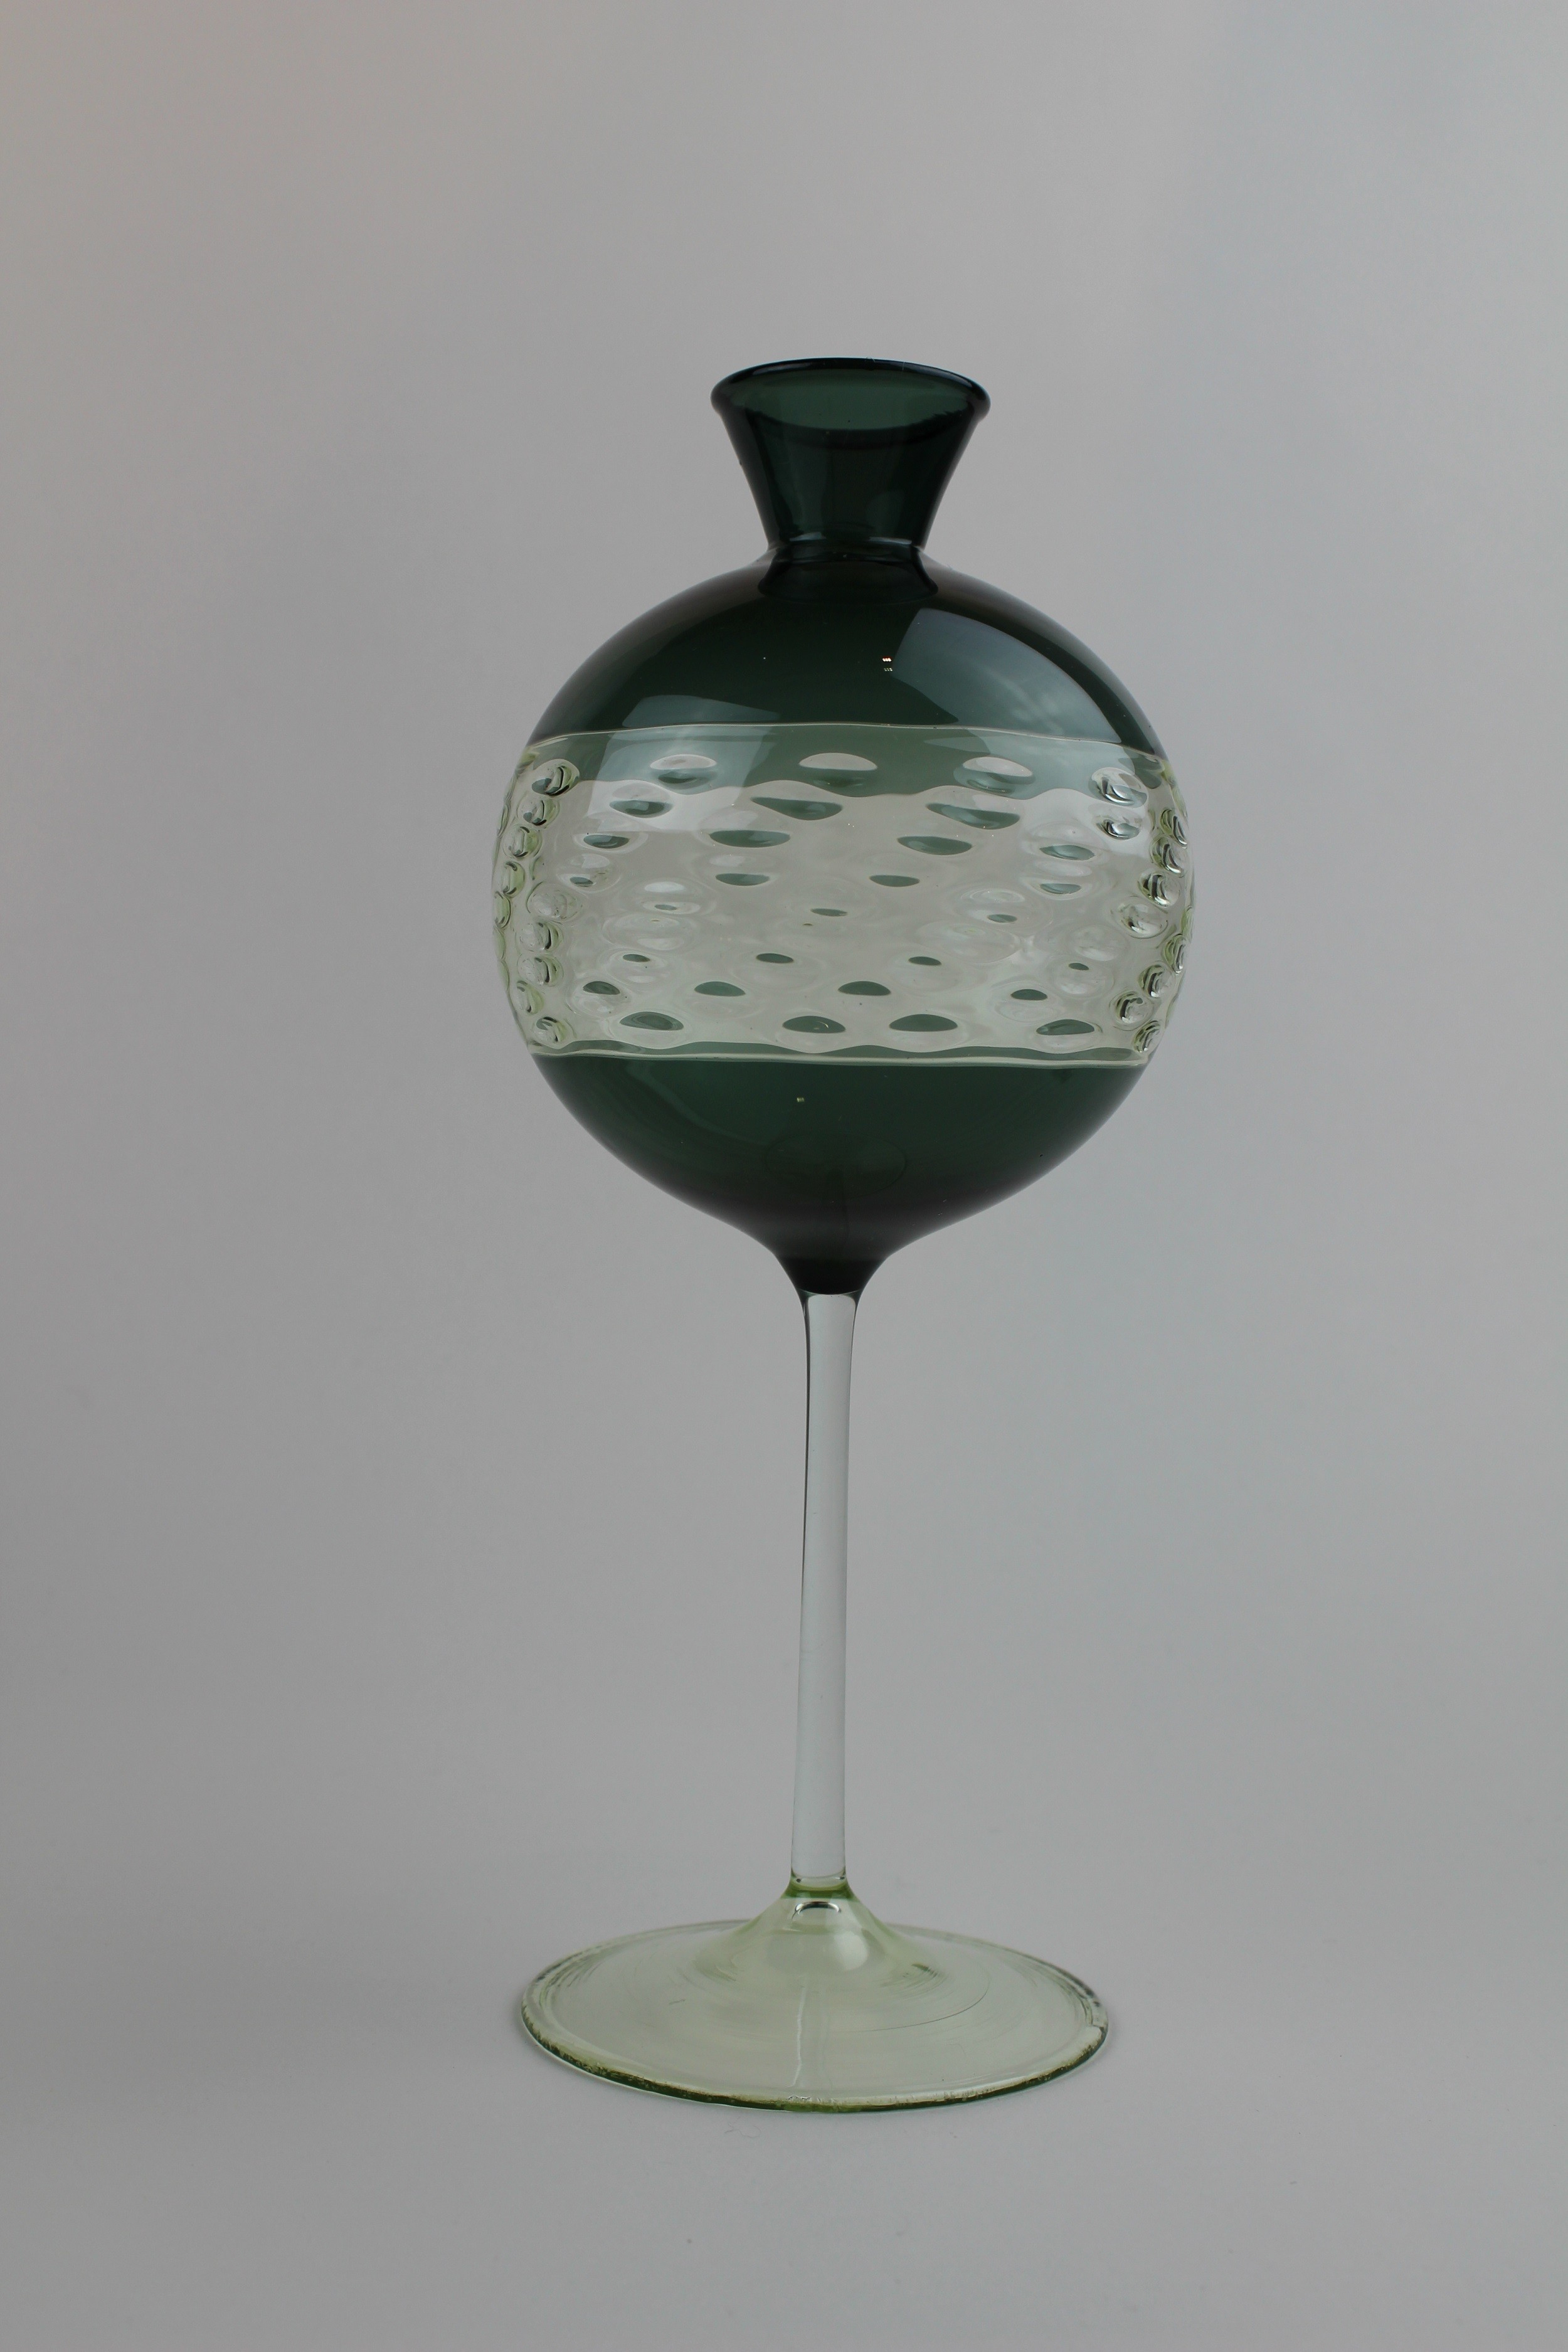 Dunkellagunenfarbene Vase/Kerzenhalter mit farblosem Fuß, Stiel und Einsatz (Museum Baruther Glashütte CC BY-NC-SA)